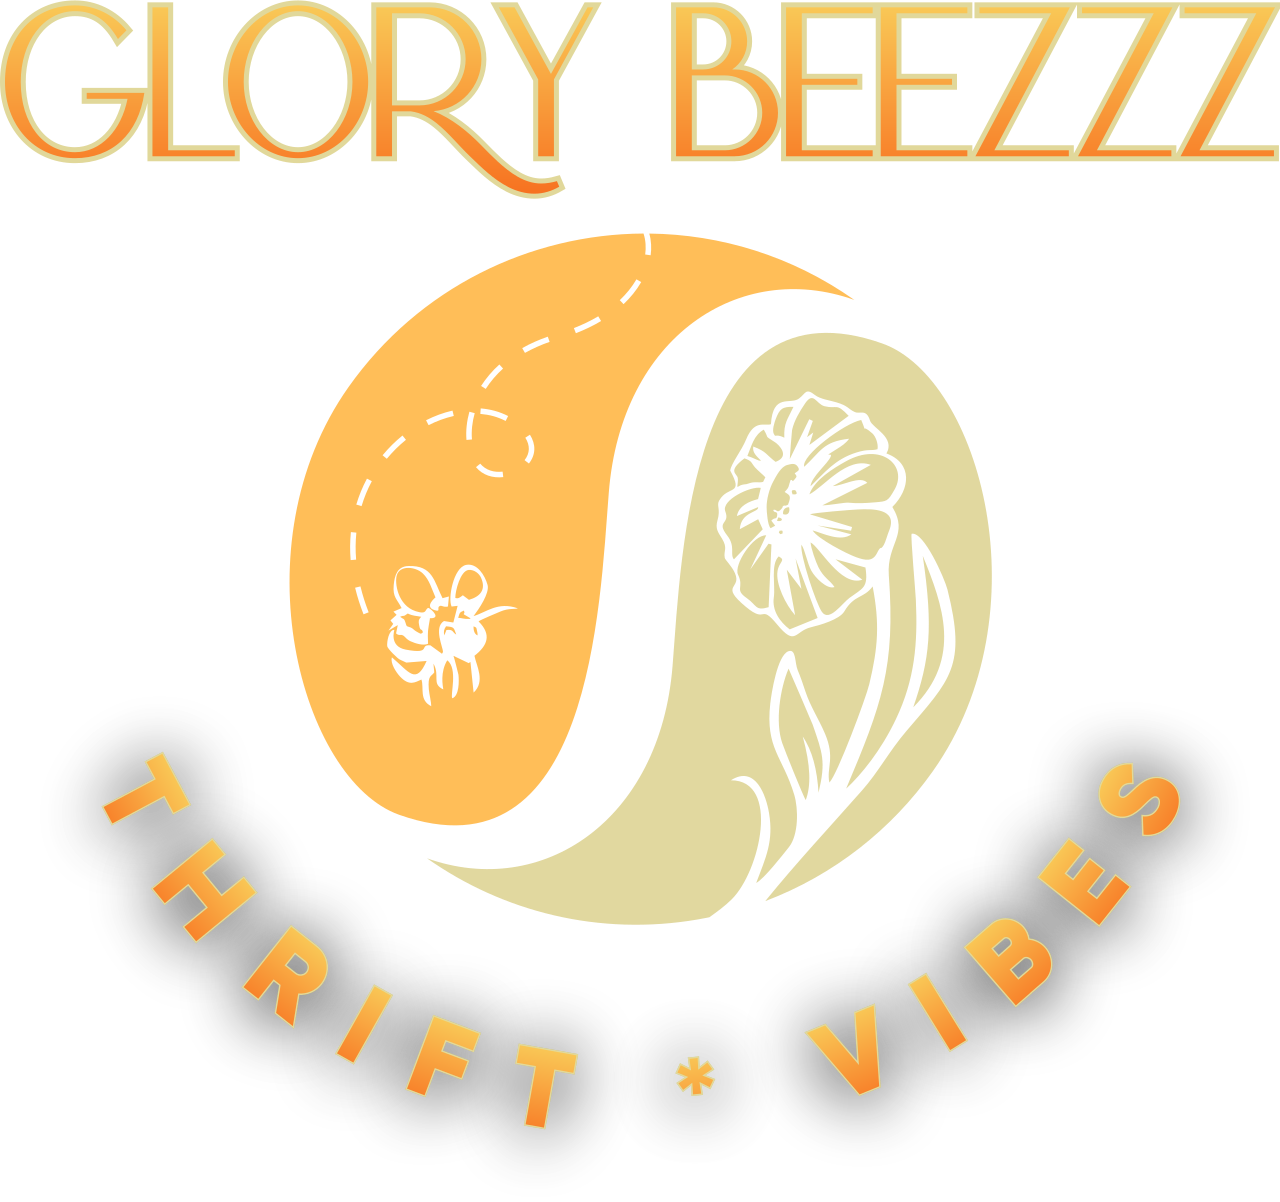 Glory Beezzz's logo